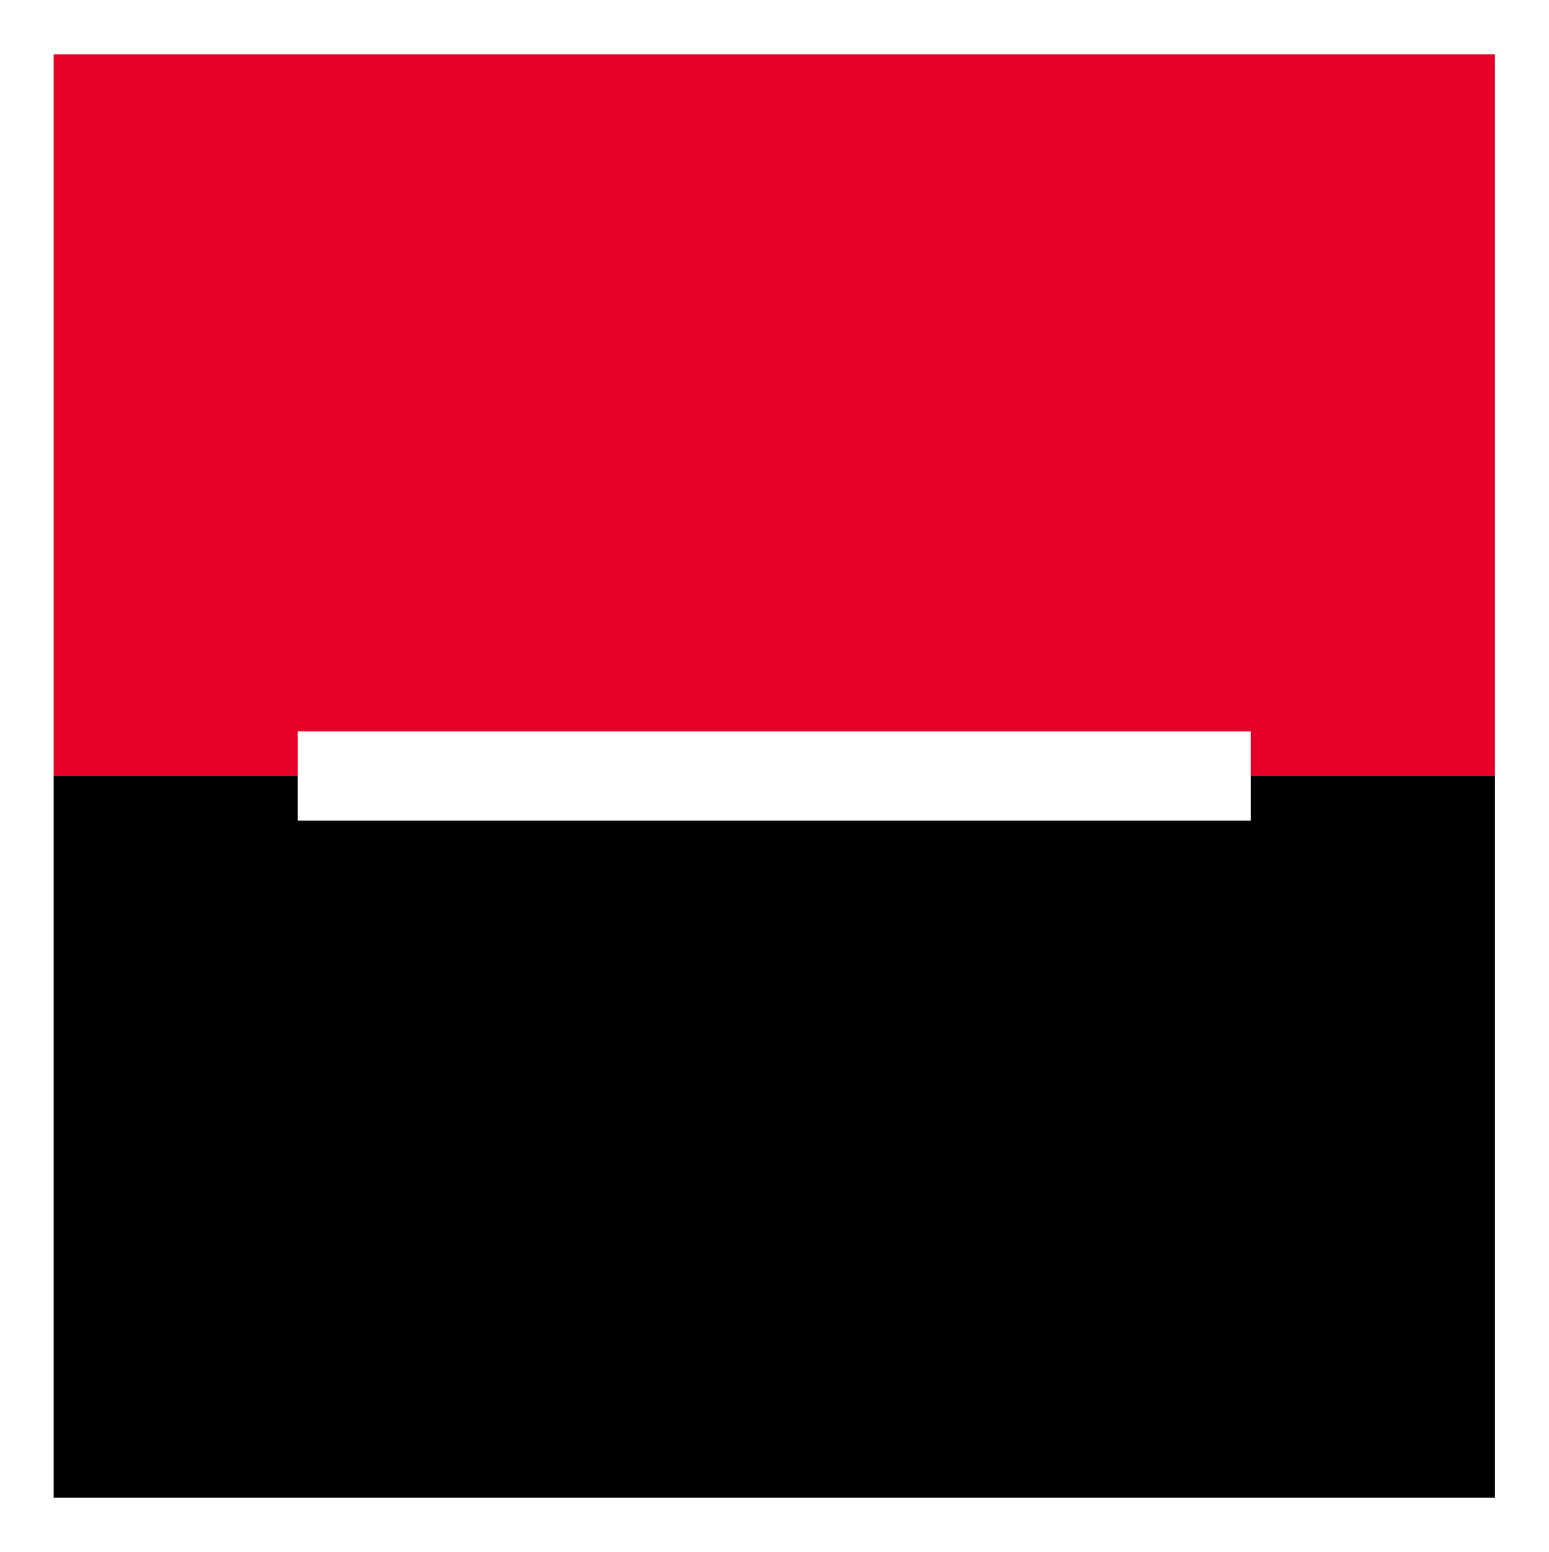 Komerční banka logo for dark backgrounds (transparent PNG)